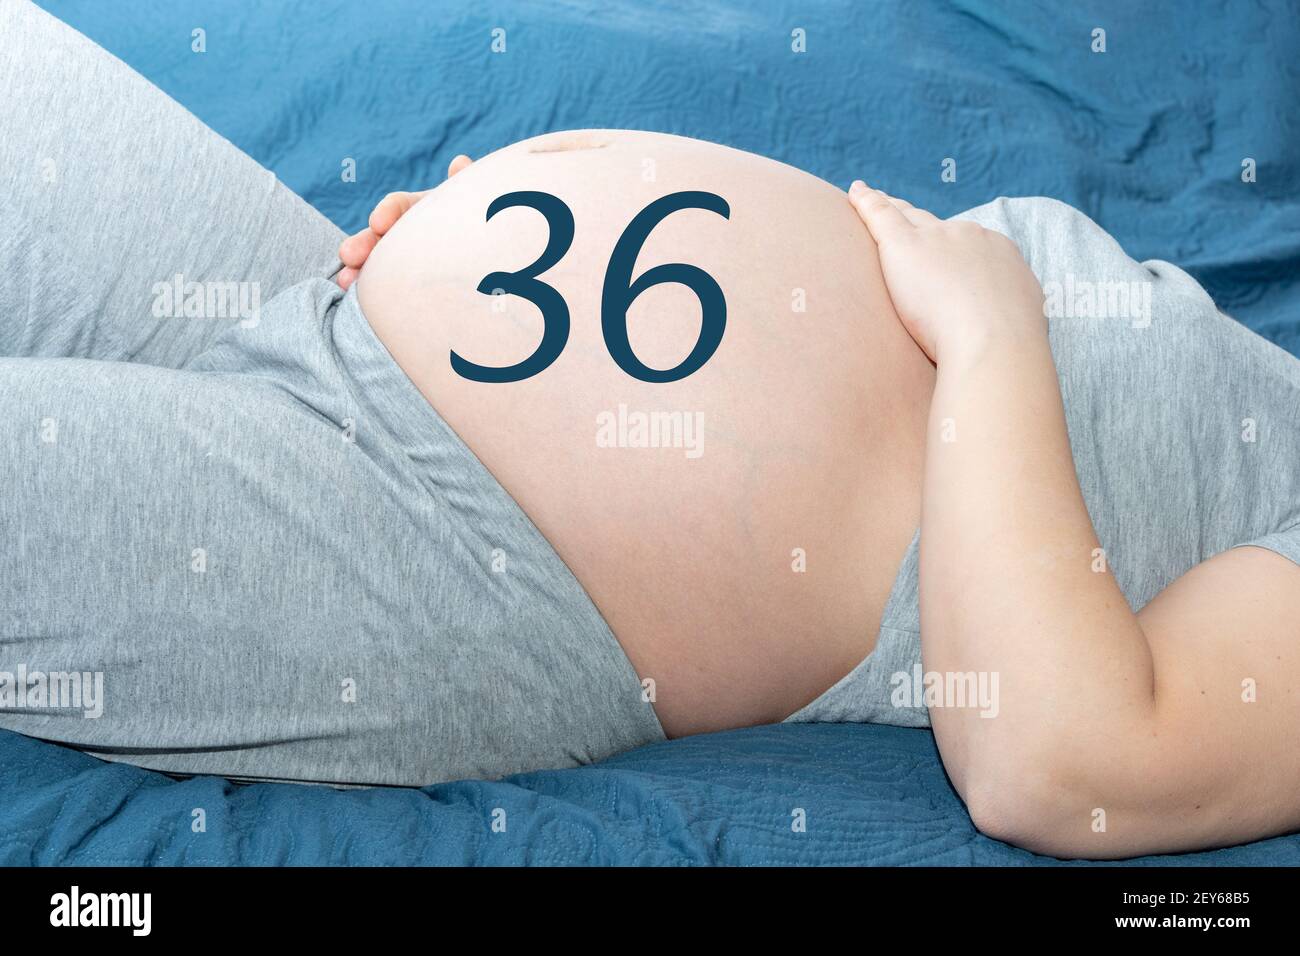 Il concetto di gravidanza. Bella pancia di una donna incinta con un calendario di 36 settimane. Una donna incinta si aspetta un bambino. Concetto di tempo e attesa Foto Stock